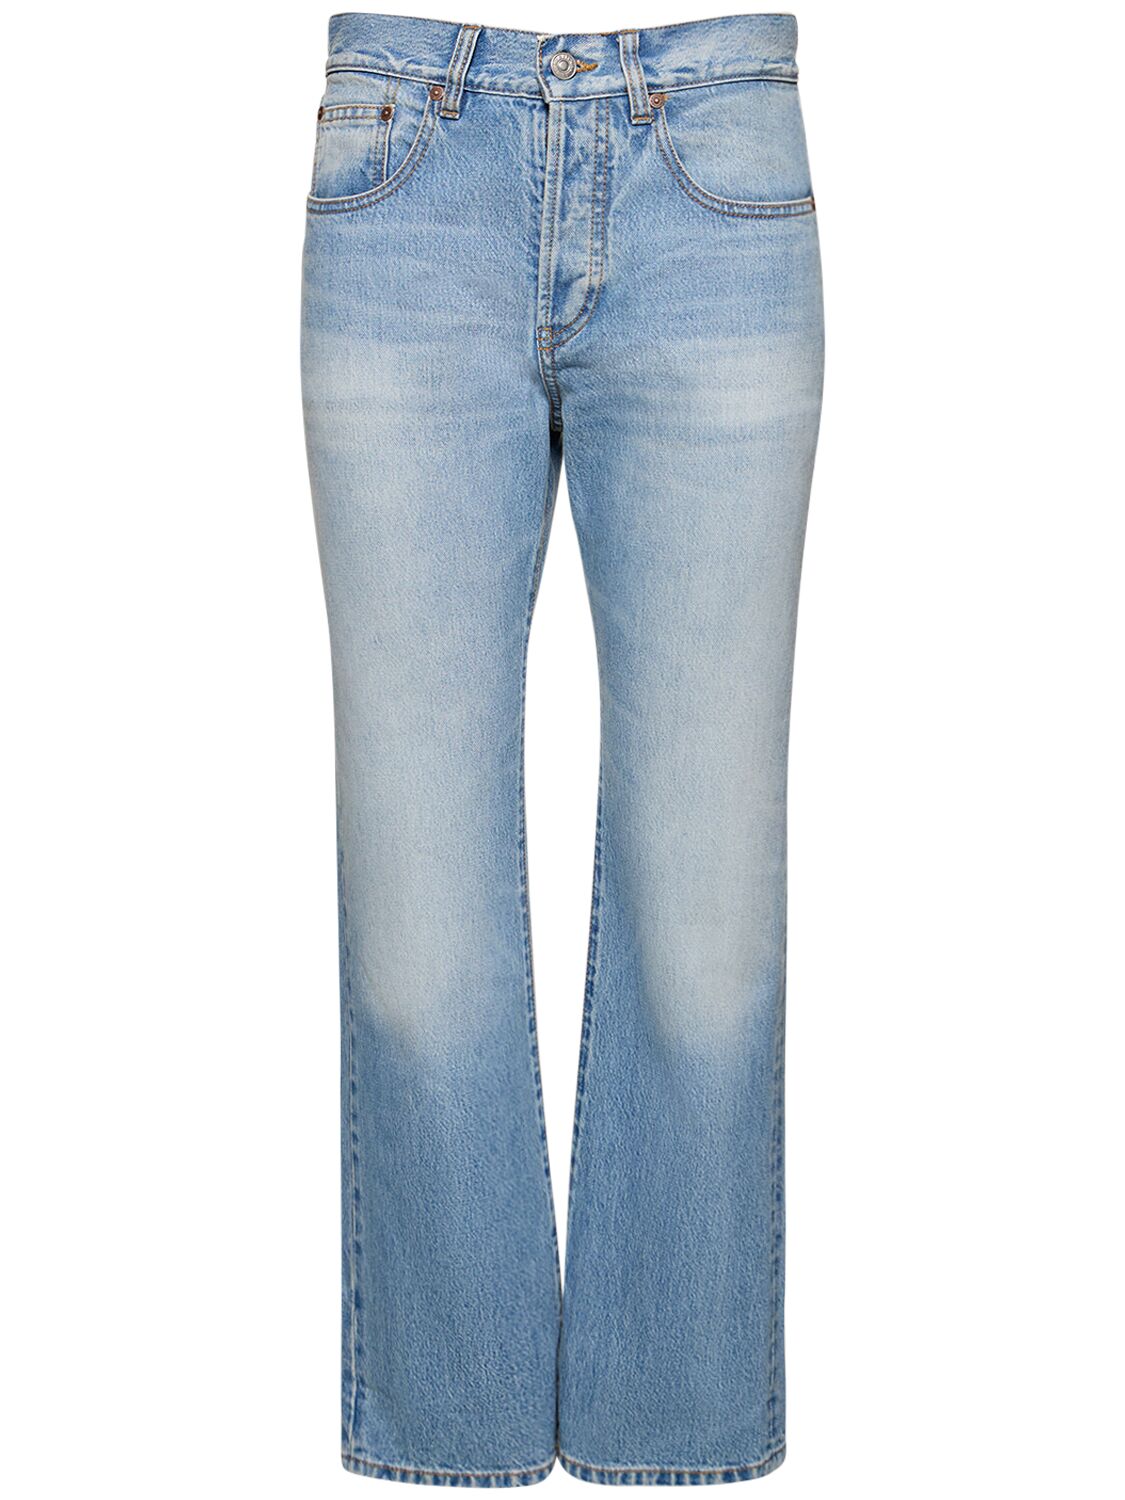 Victoria Mid Rise Cotton Denim Jeans